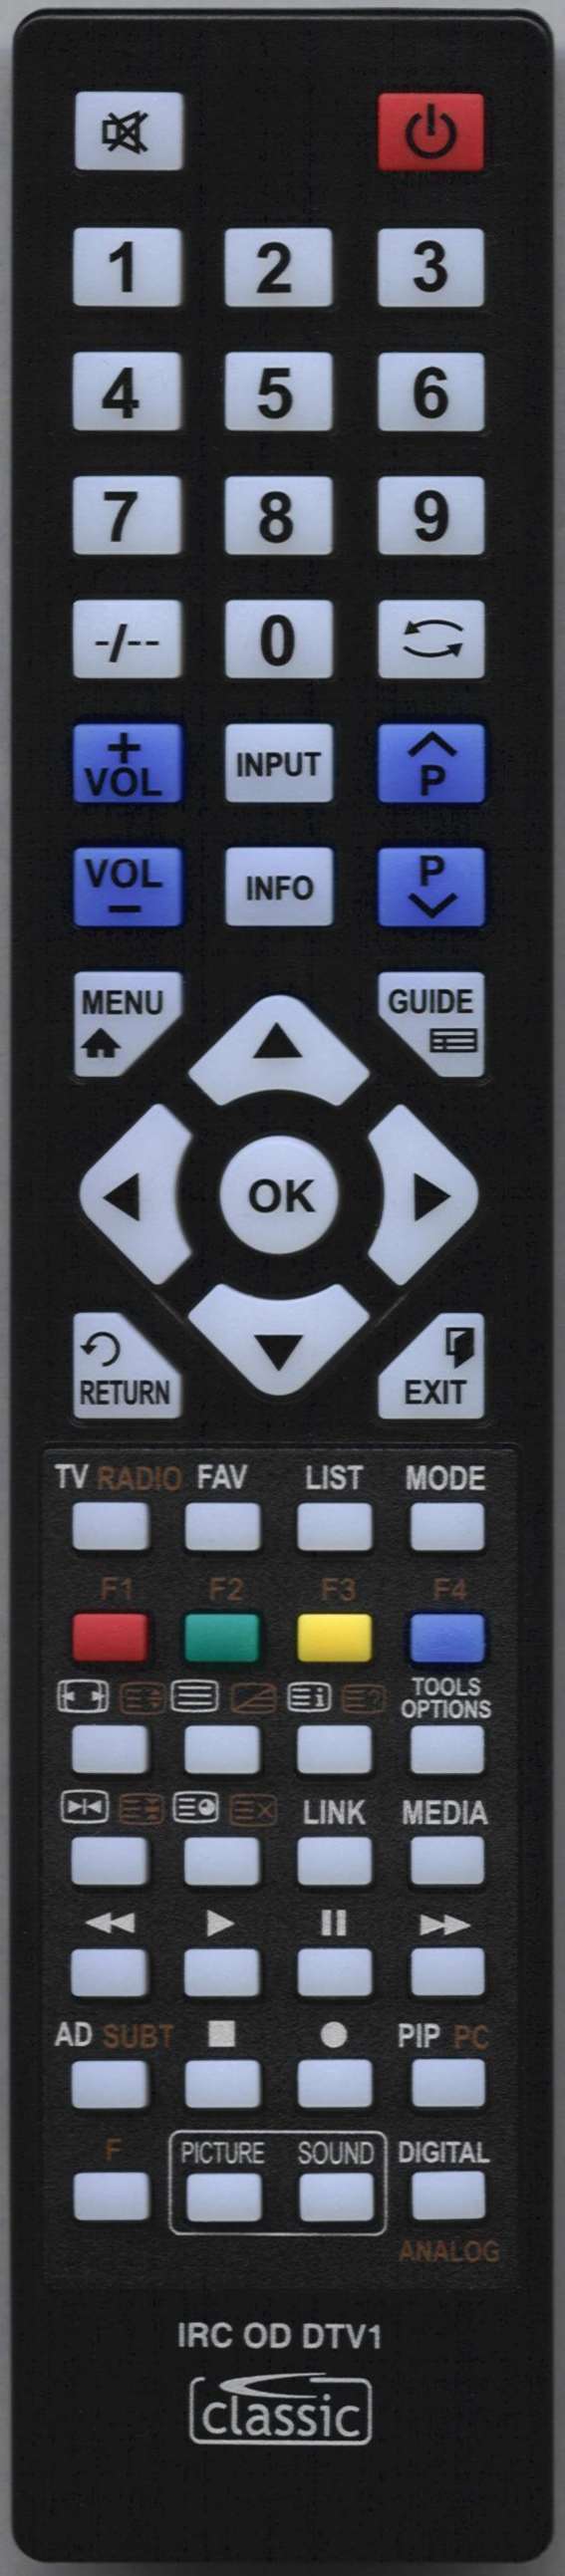 MATSUI TVR 2000 Remote Control